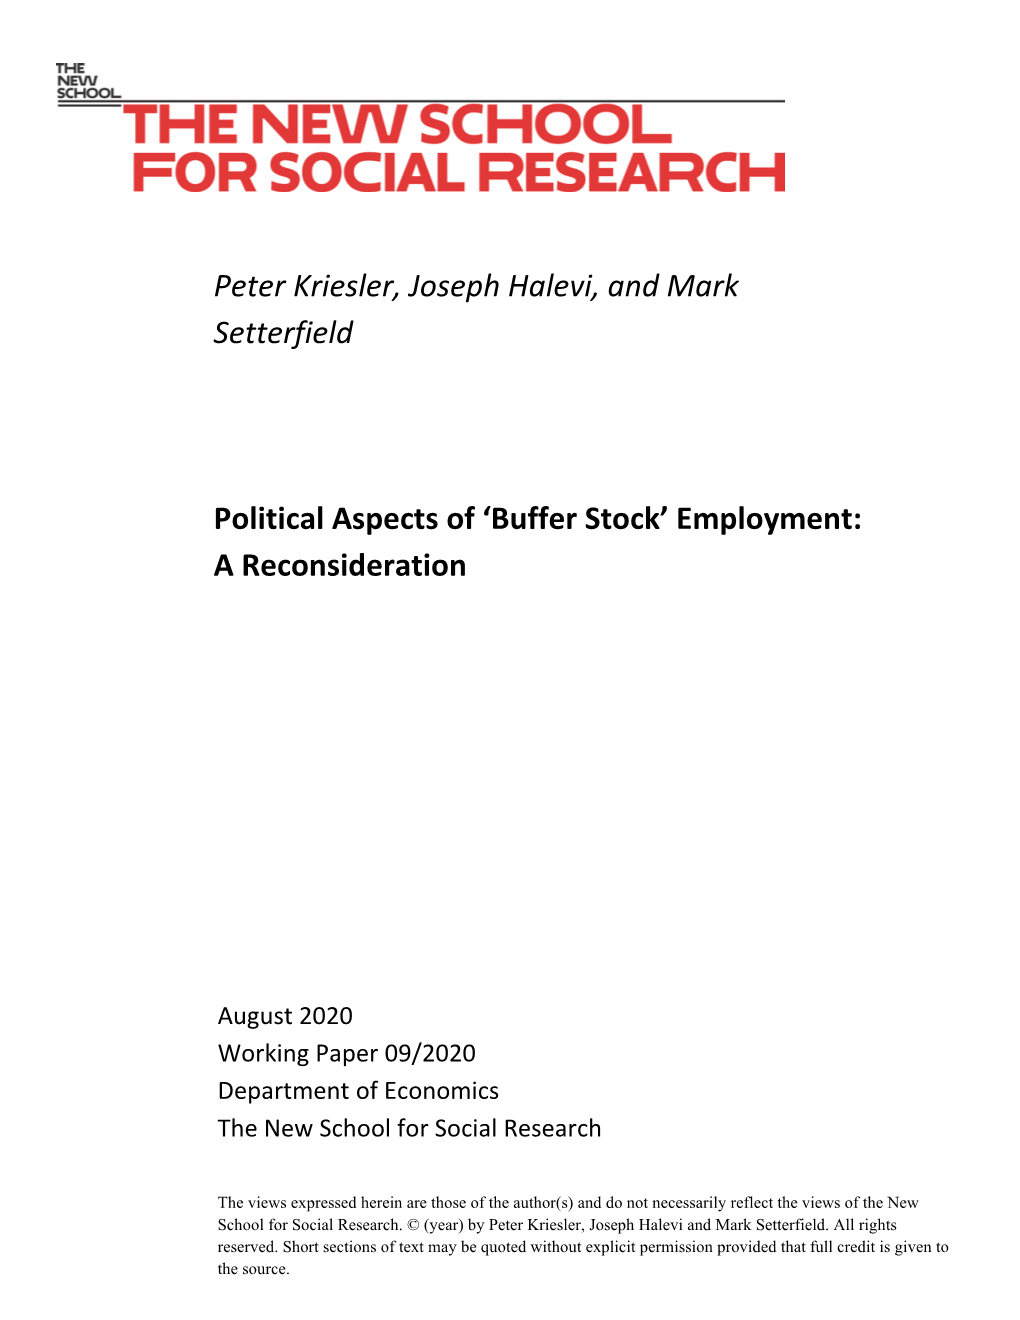 Buffer Stock’ Employment: a Reconsideration